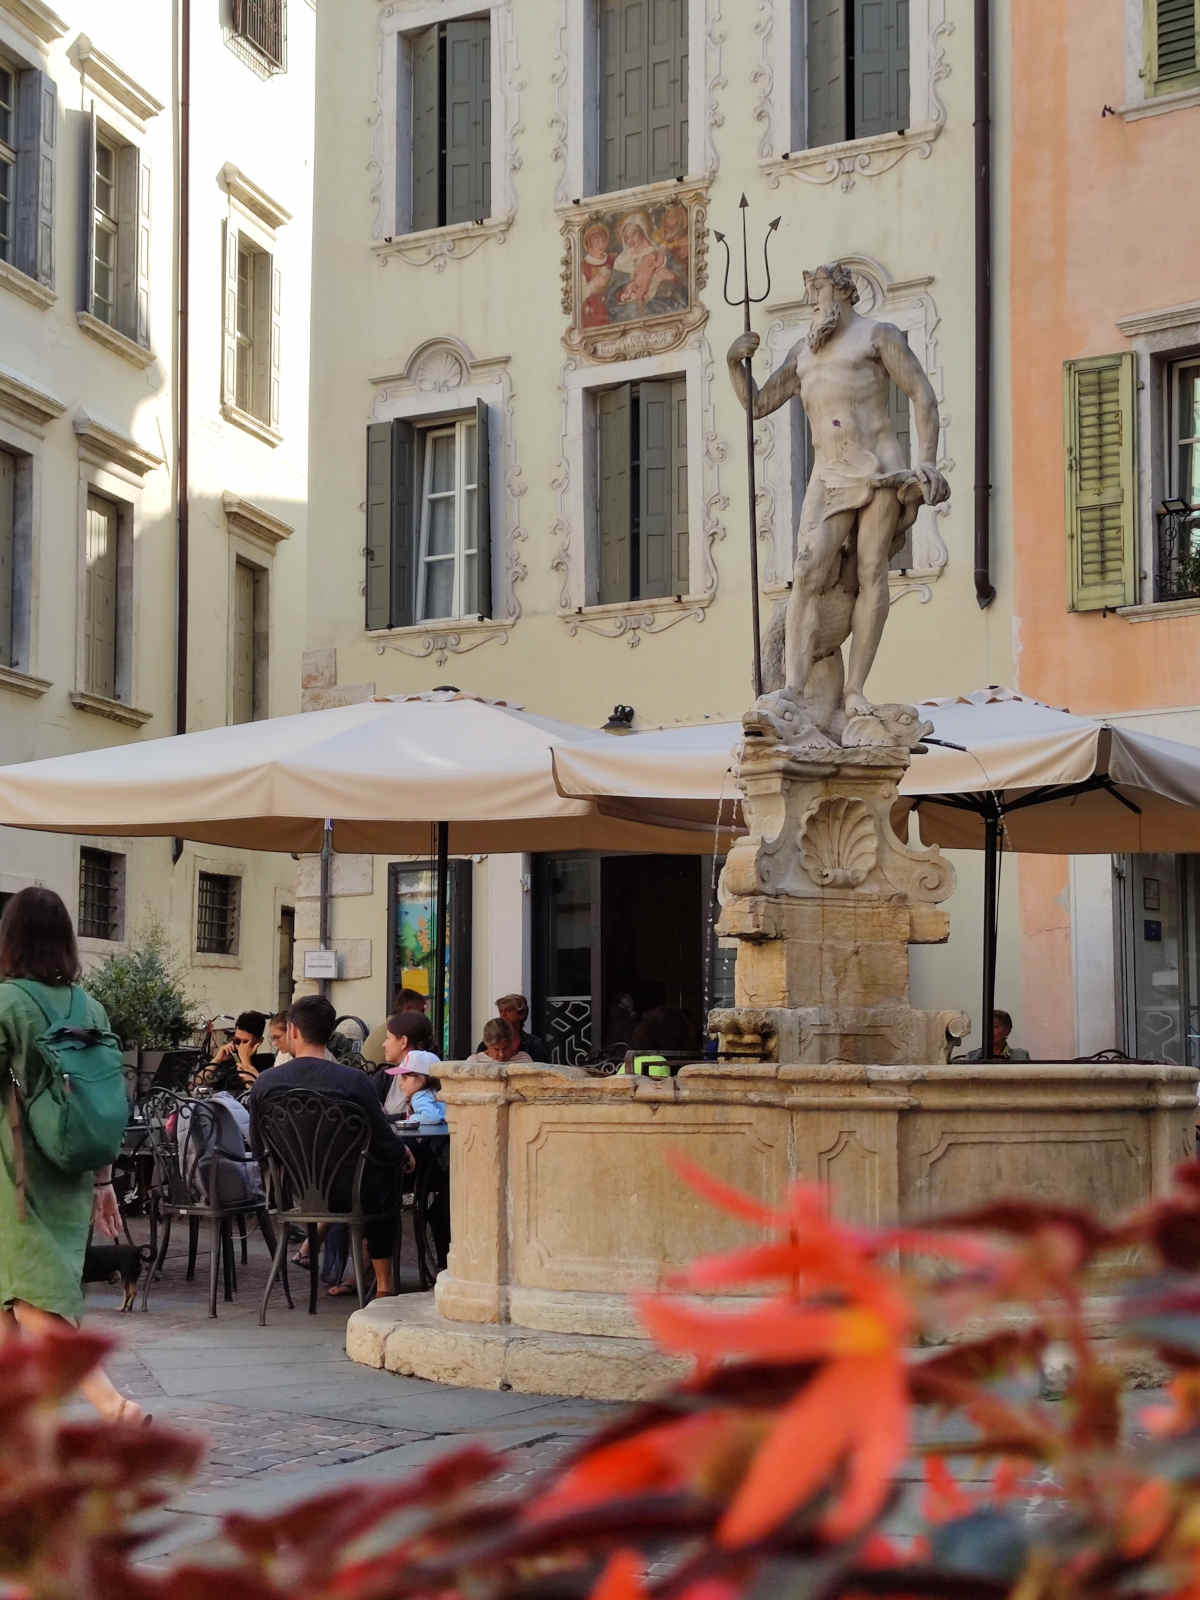 Cosa vedere e fare a Rovereto: Fra i luoghi imperdibili per fare una sosta, c'è Piazza Cesare Battisti, con la sua bella Fontana di Nettuno